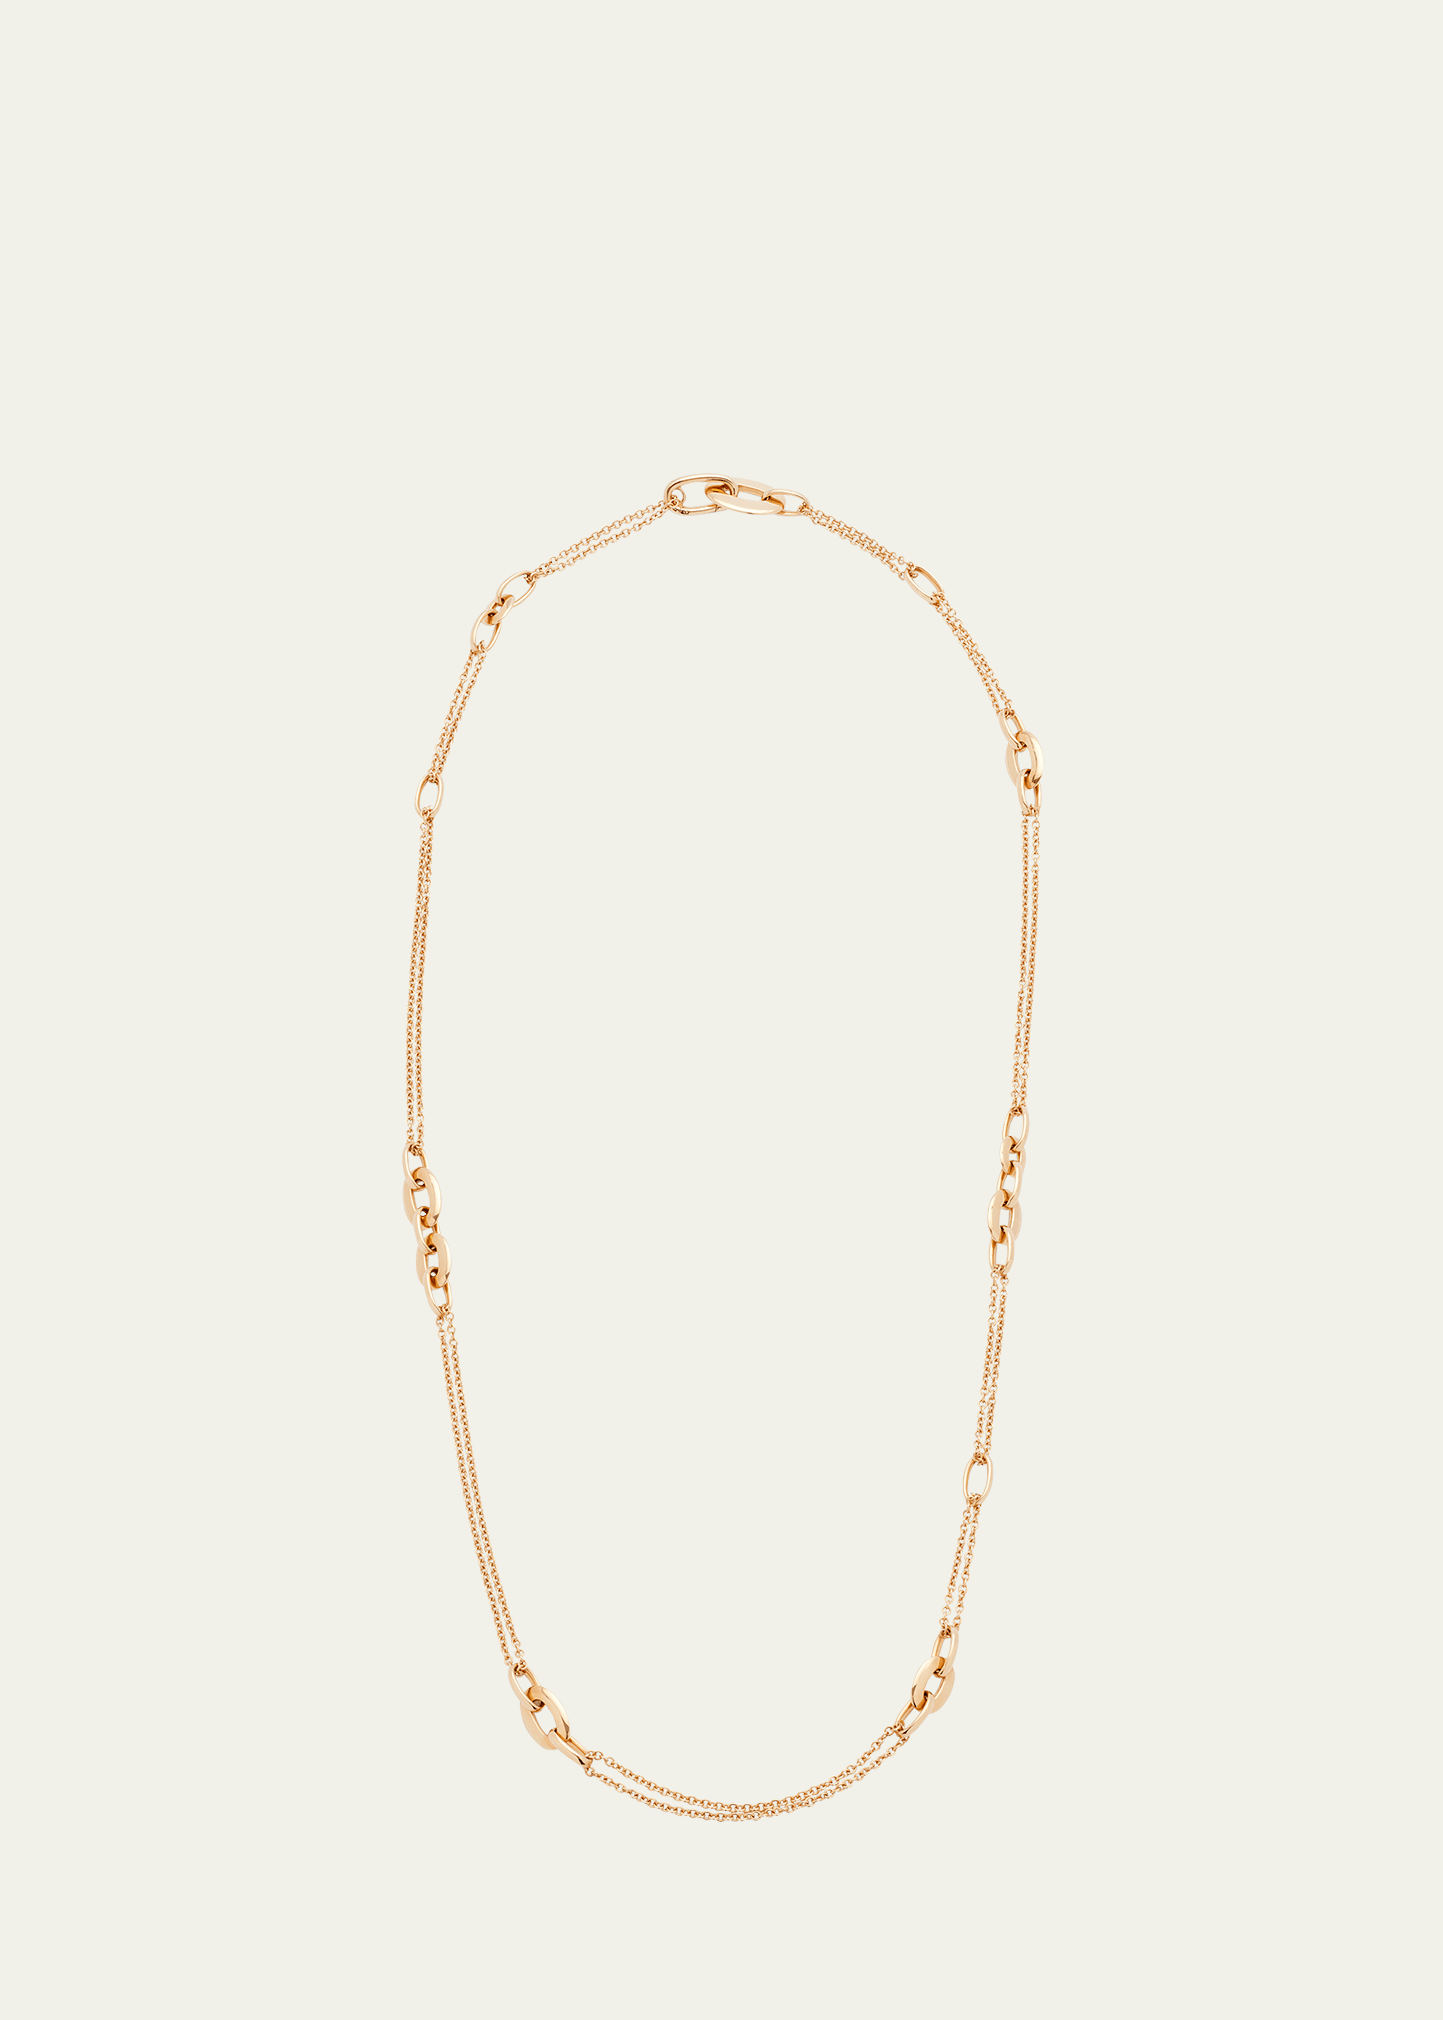 Pomellato 18k Rose Gold Catene Chain Necklace, 36"l